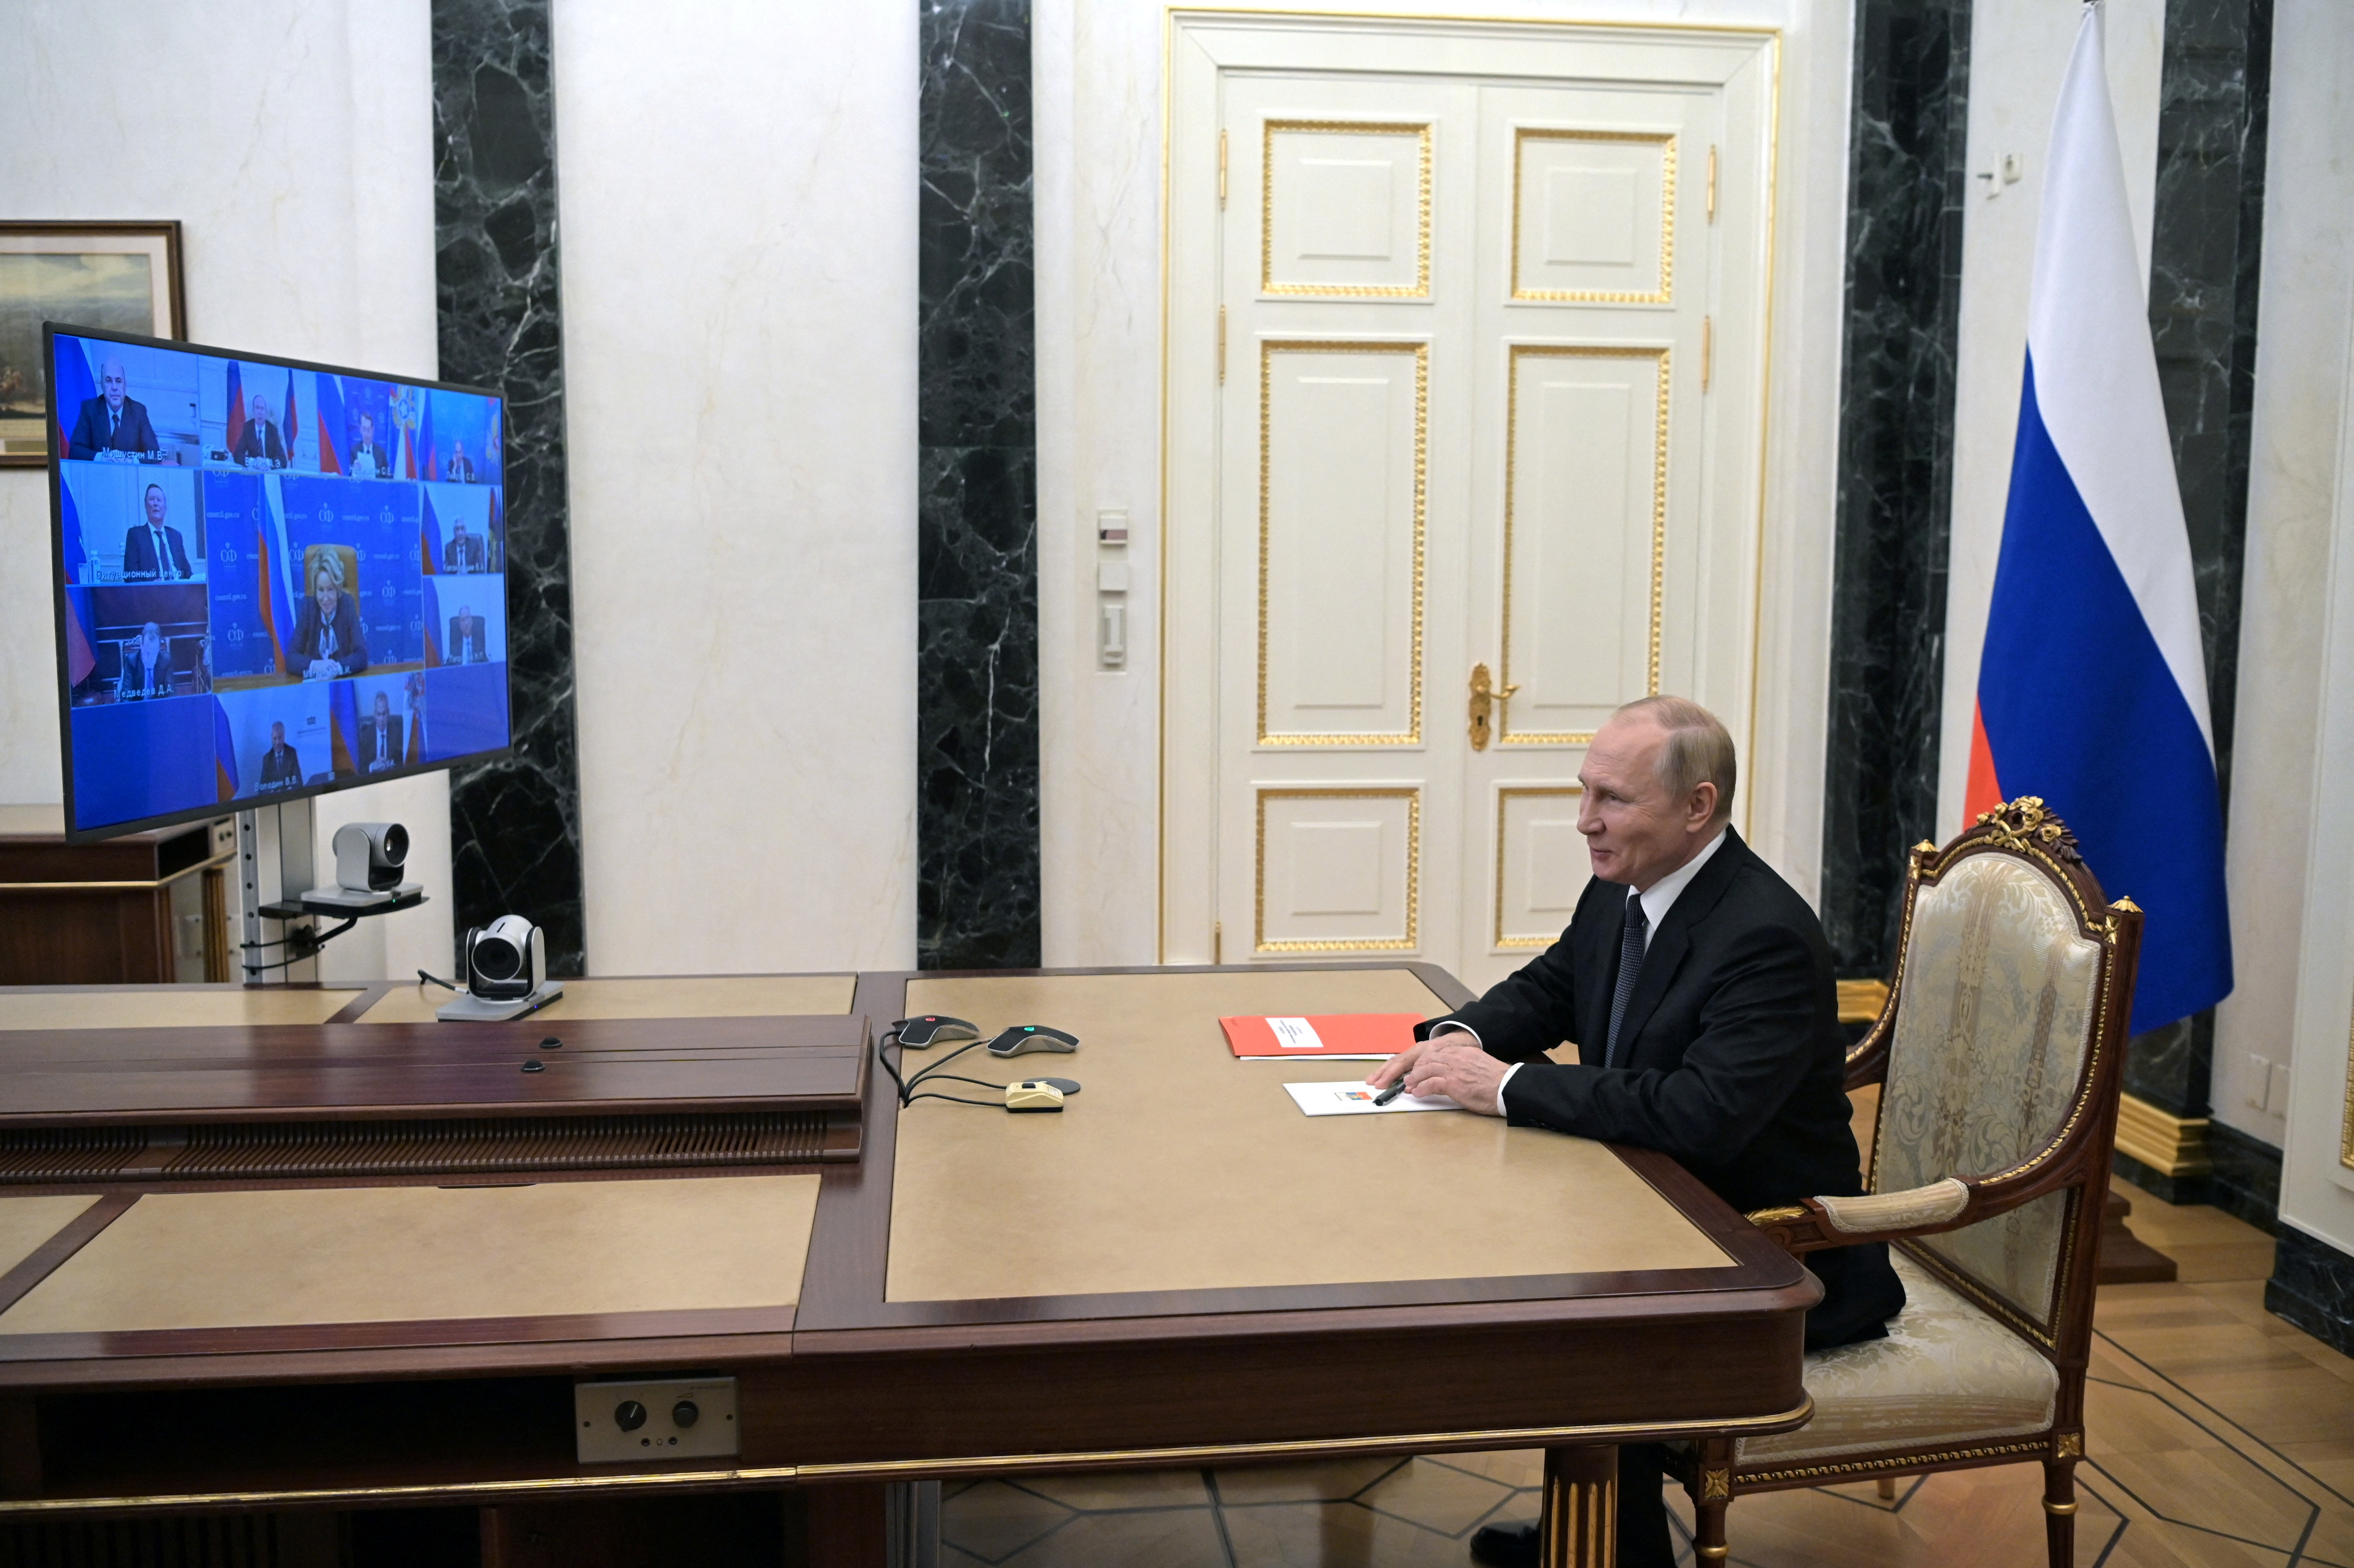 El presidente ruso, Vladimir Putin, preside una reunión con miembros del Consejo de Seguridad